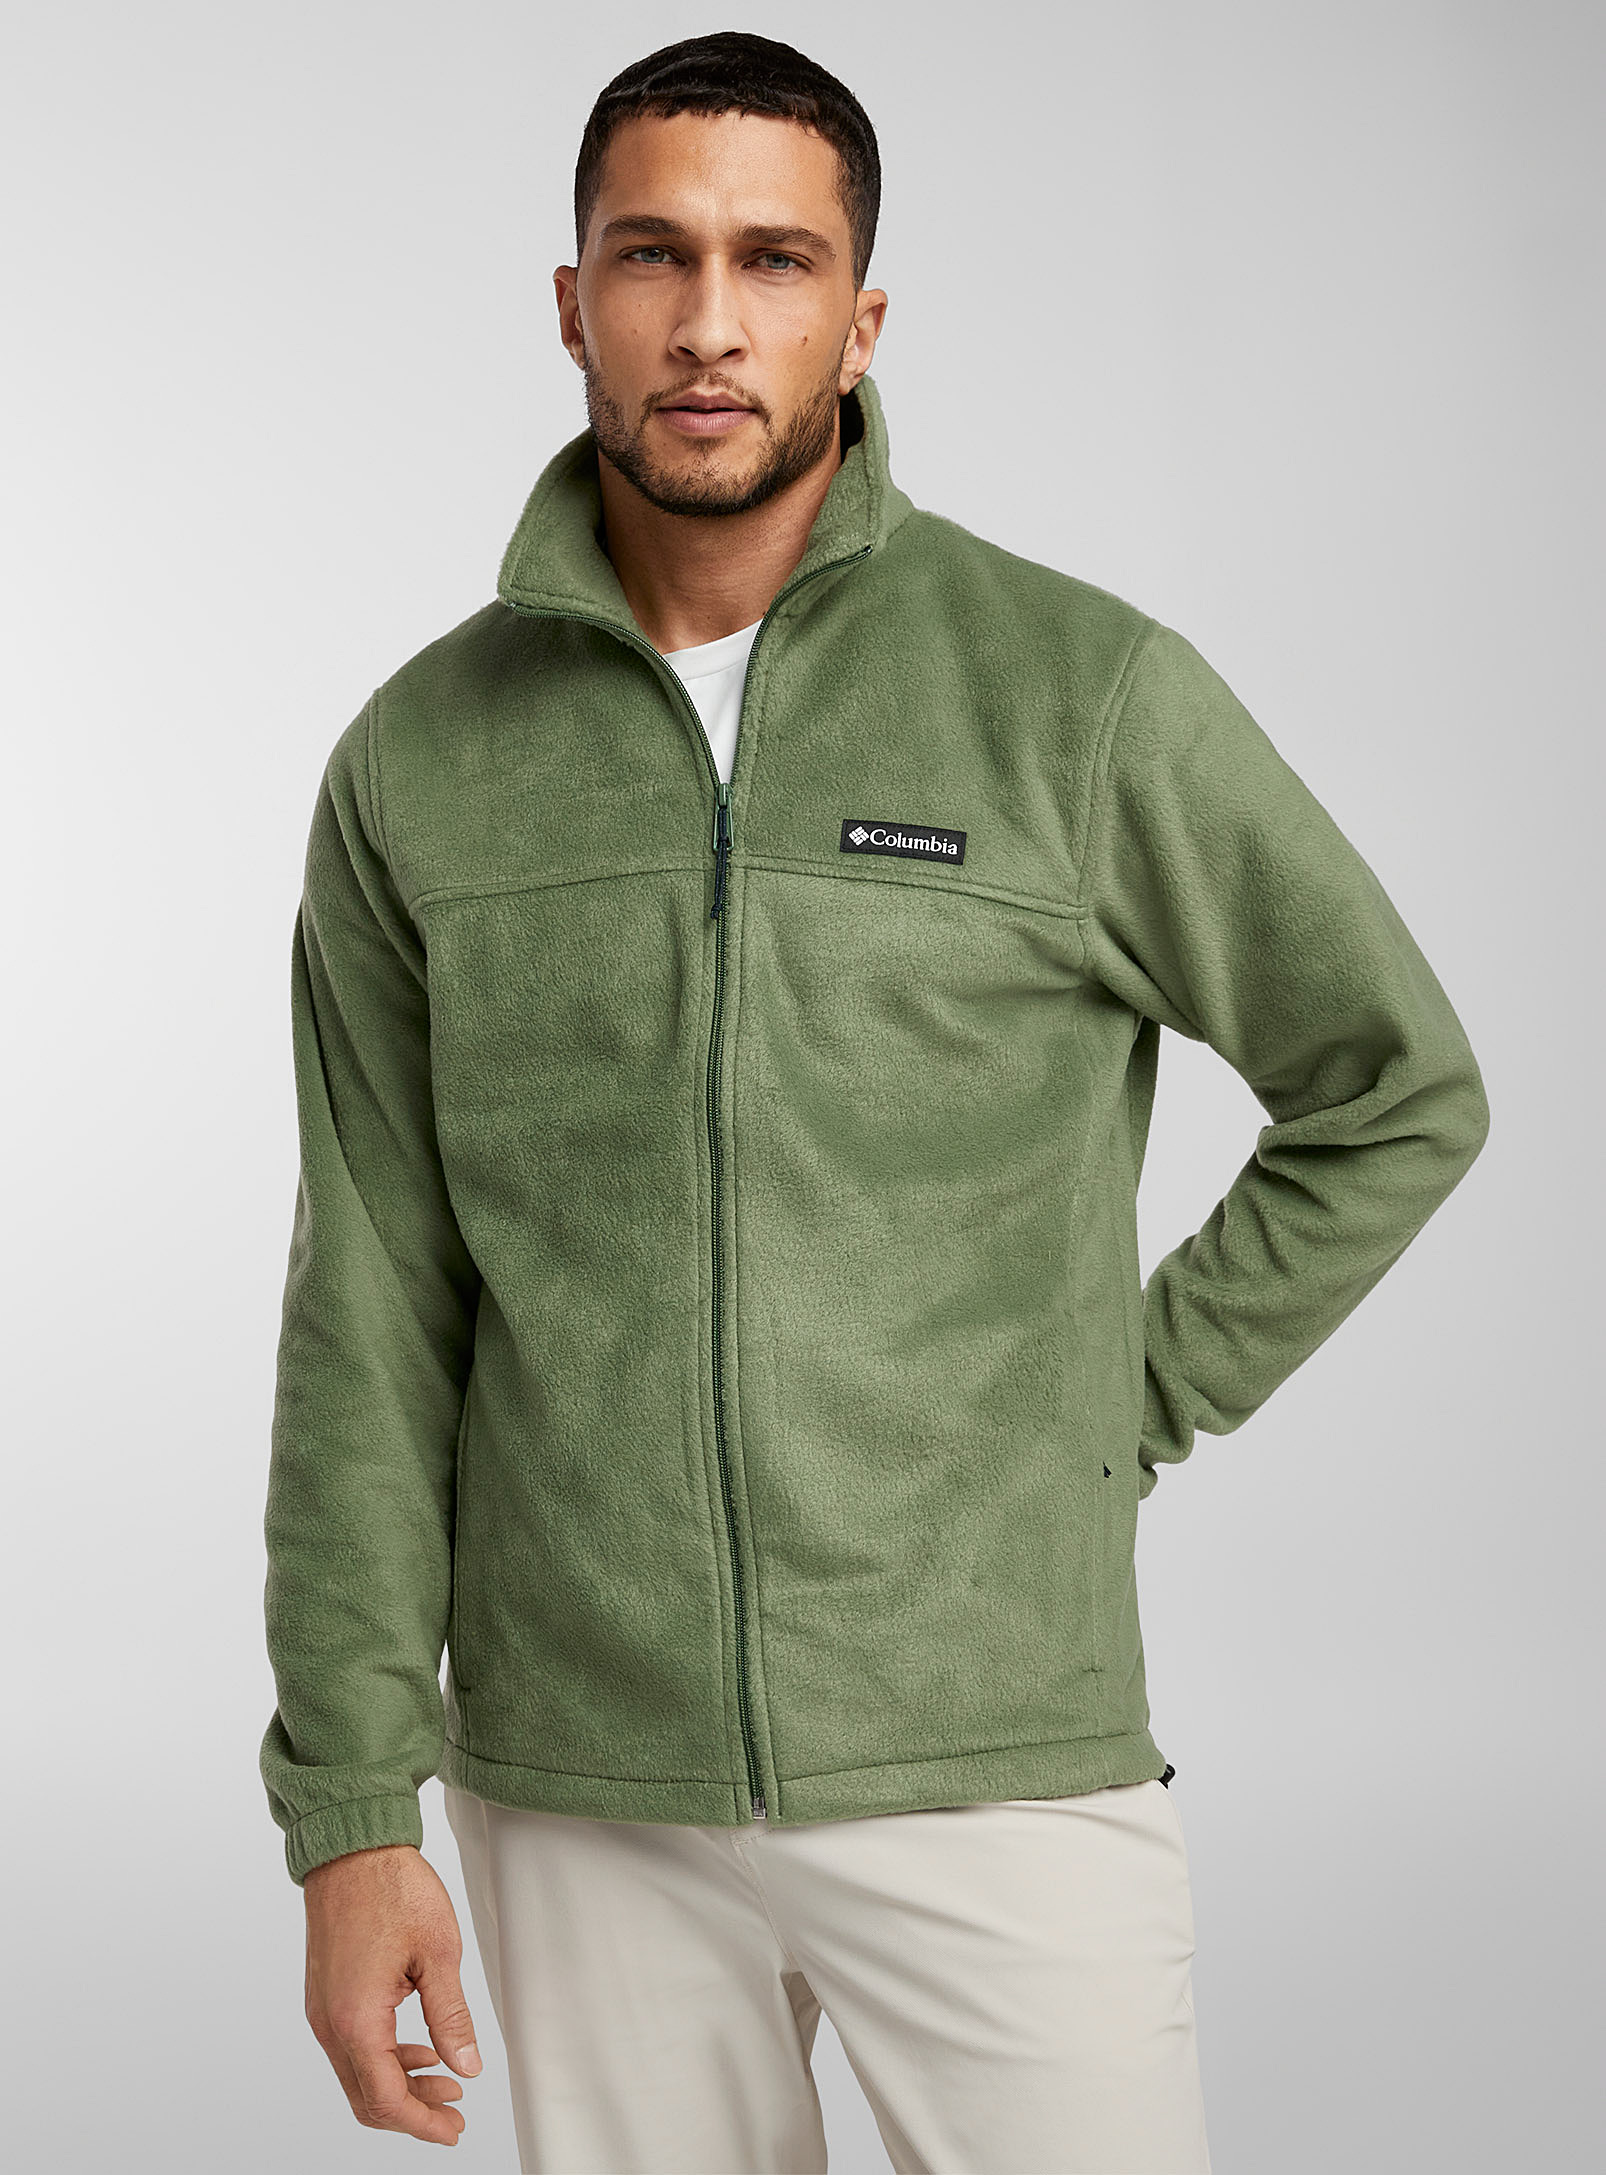 Columbia - Men's Steens Mountain zip fleece sweatshirt